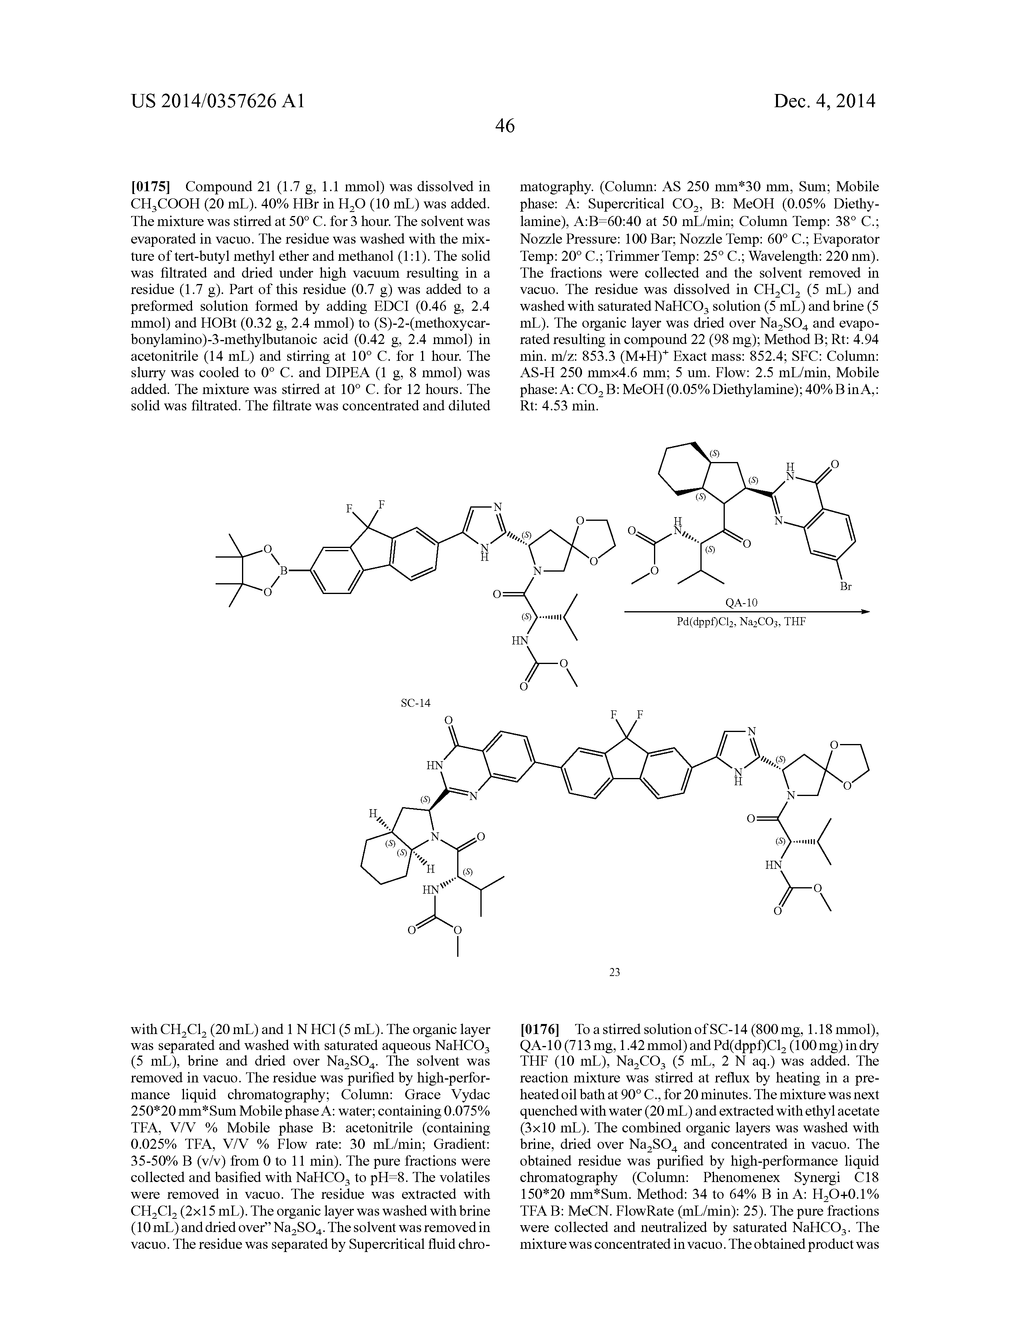 Hetero-Bicyclic Derivatives As HCV Inhibitors - diagram, schematic, and image 47